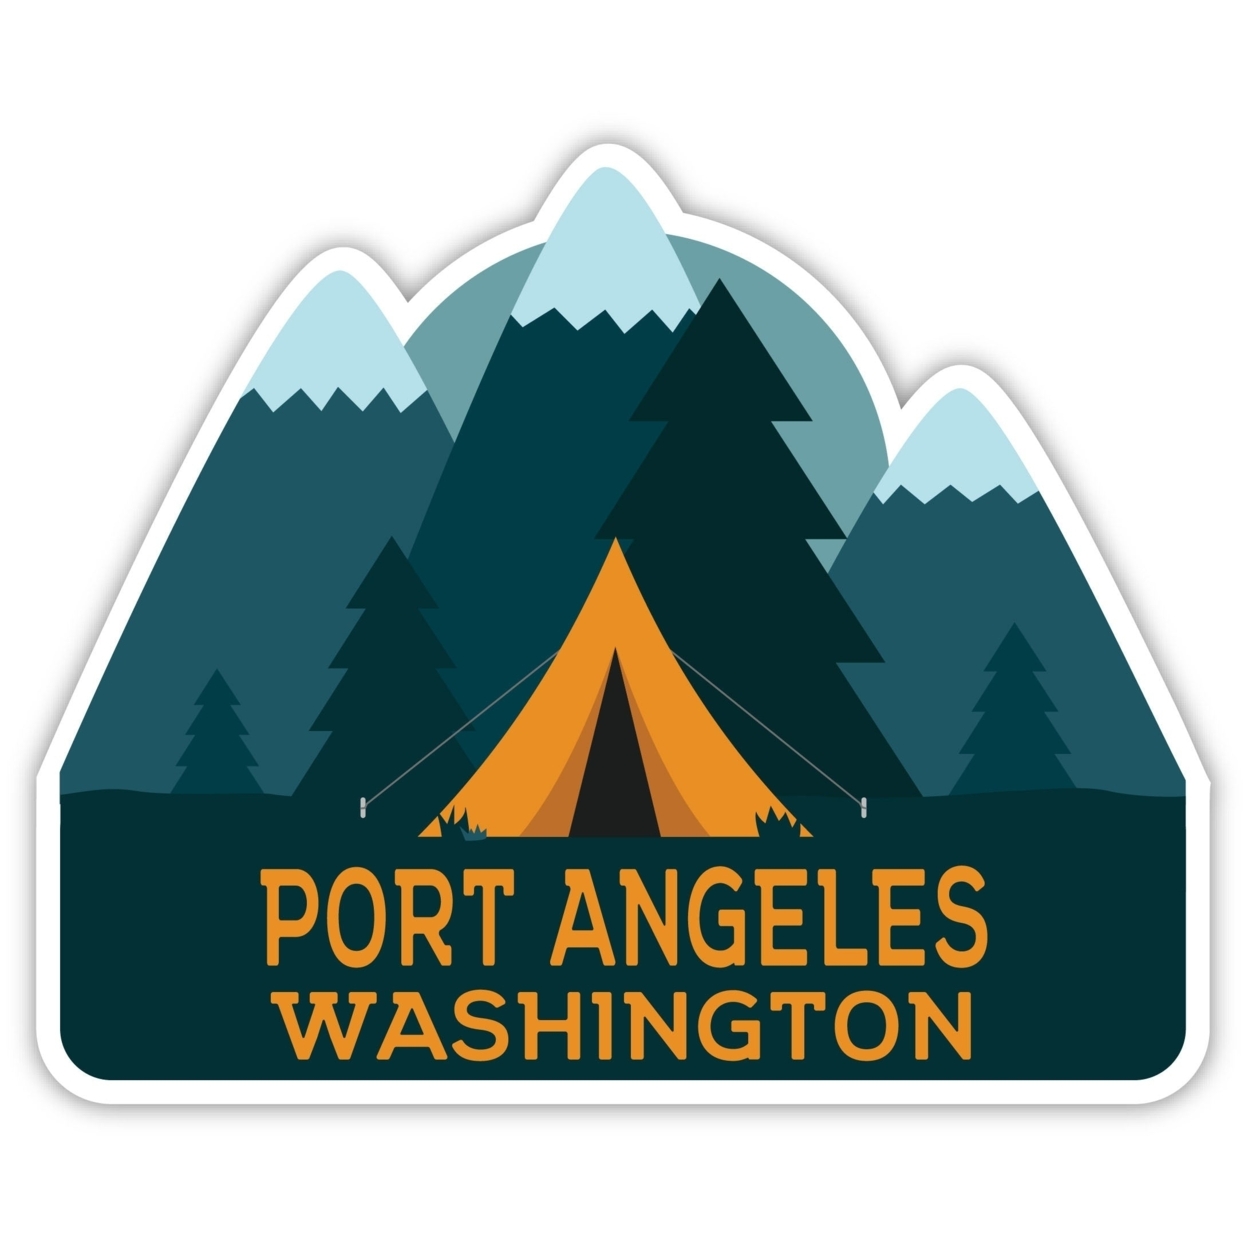 Port Angeles Washington Souvenir Decorative Stickers (Choose Theme And Size) - Single Unit, 2-Inch, Tent